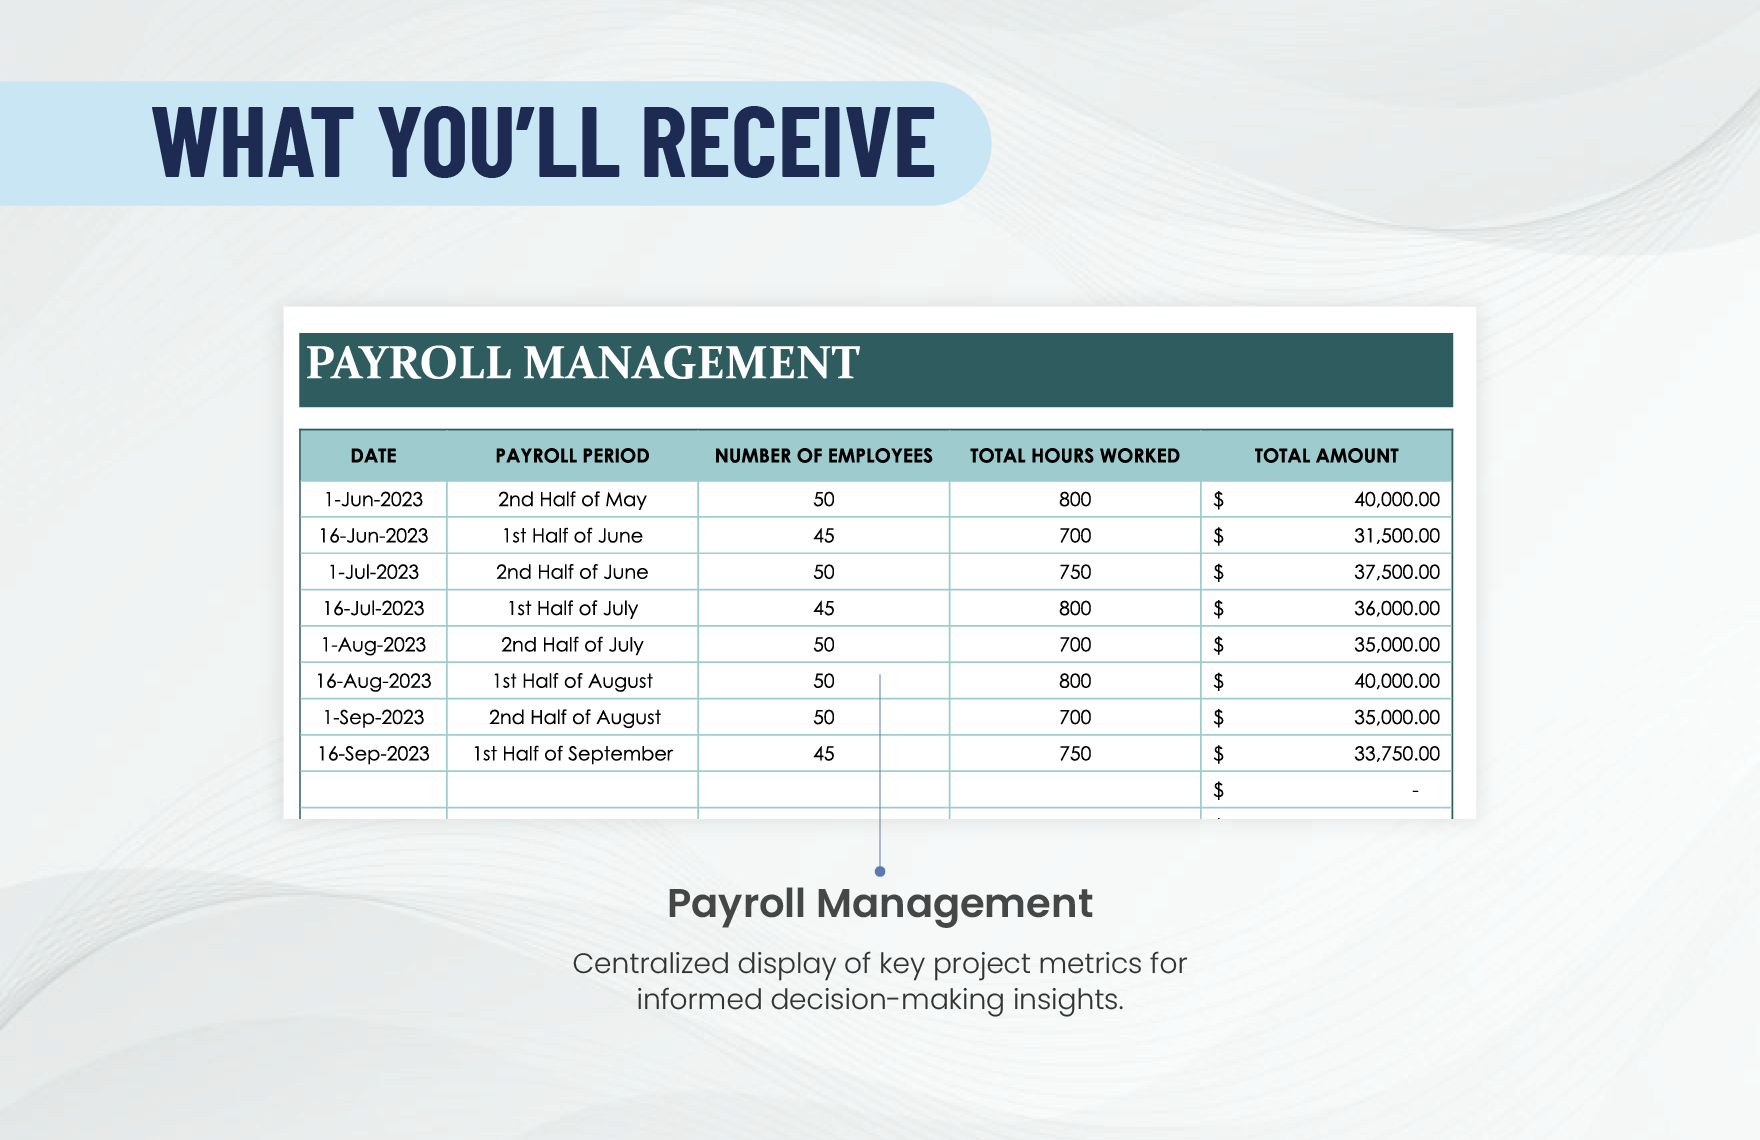 Payroll Calendar Template